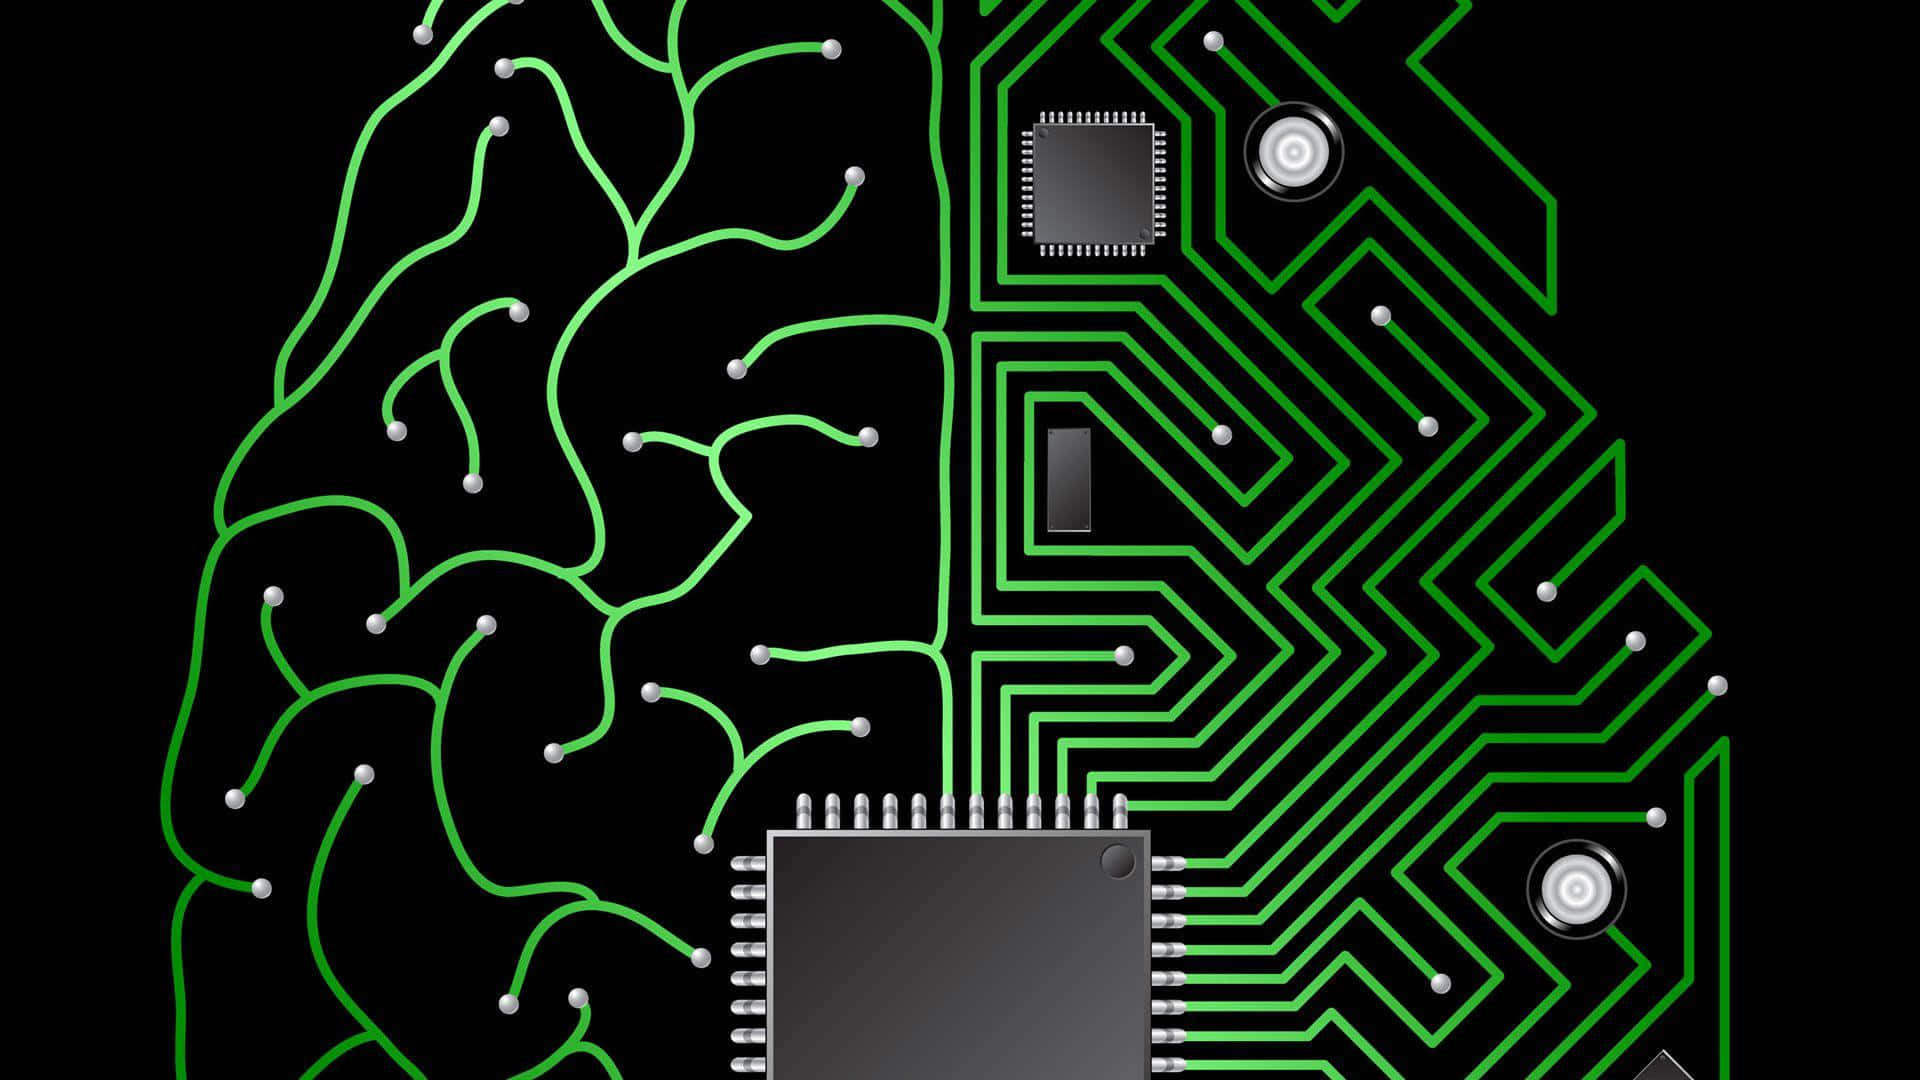 Imagende Innovación Tecnológica De Chip Cerebral De Ia